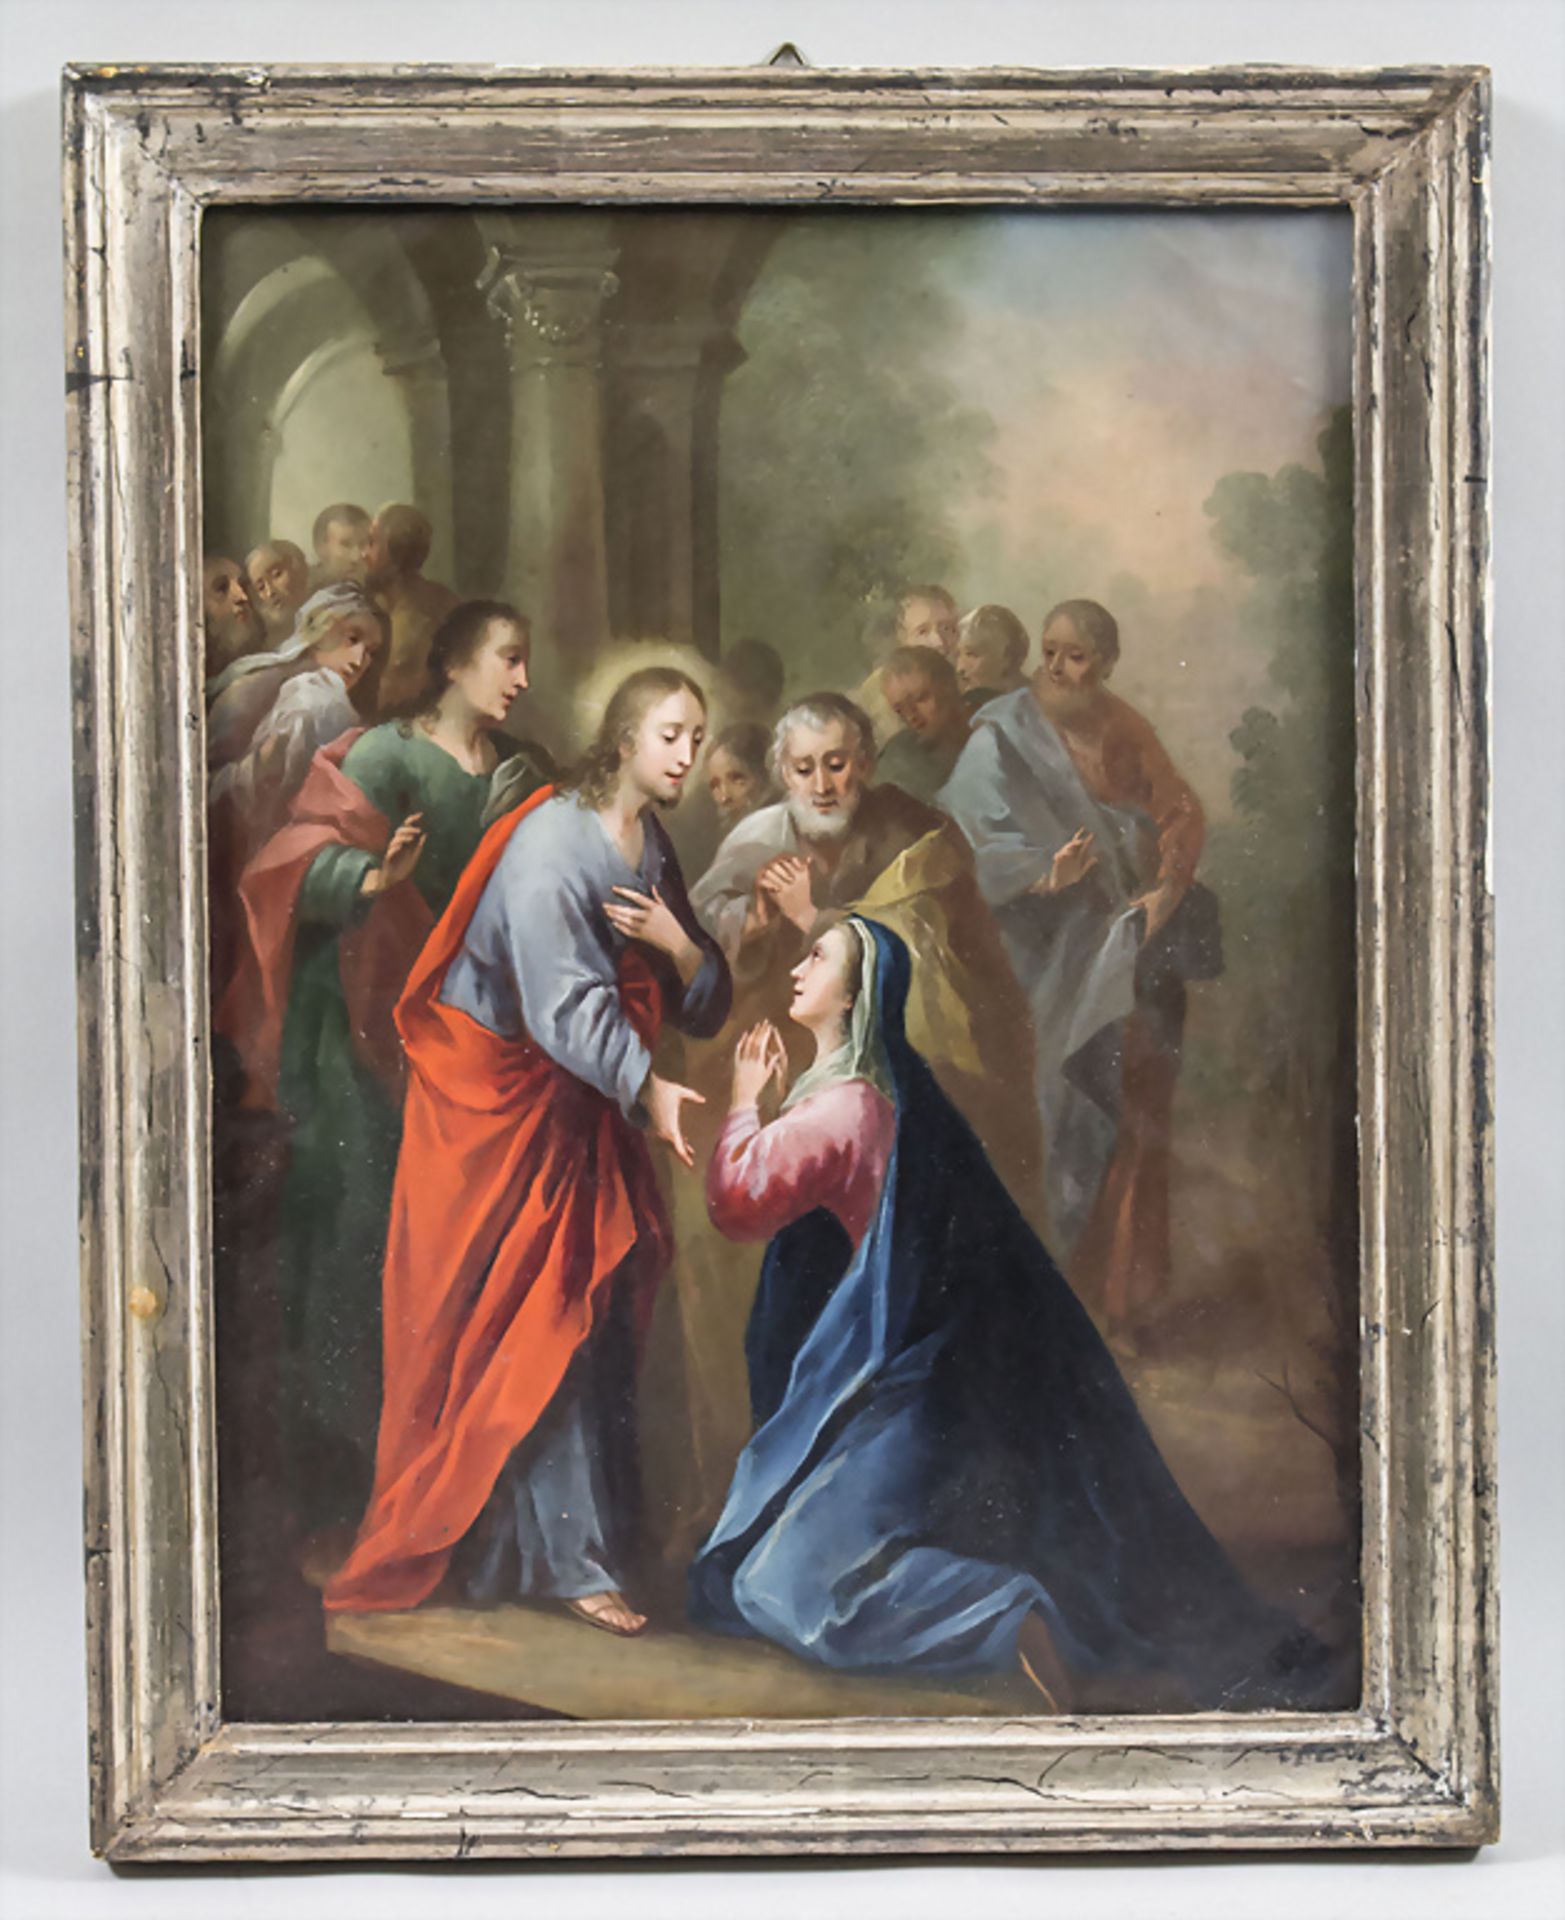 Unbekannter Künstler des 16. /17. Jh., 'Anbetung des Heilands' / 'Adoration of the Savior', ... - Bild 2 aus 3